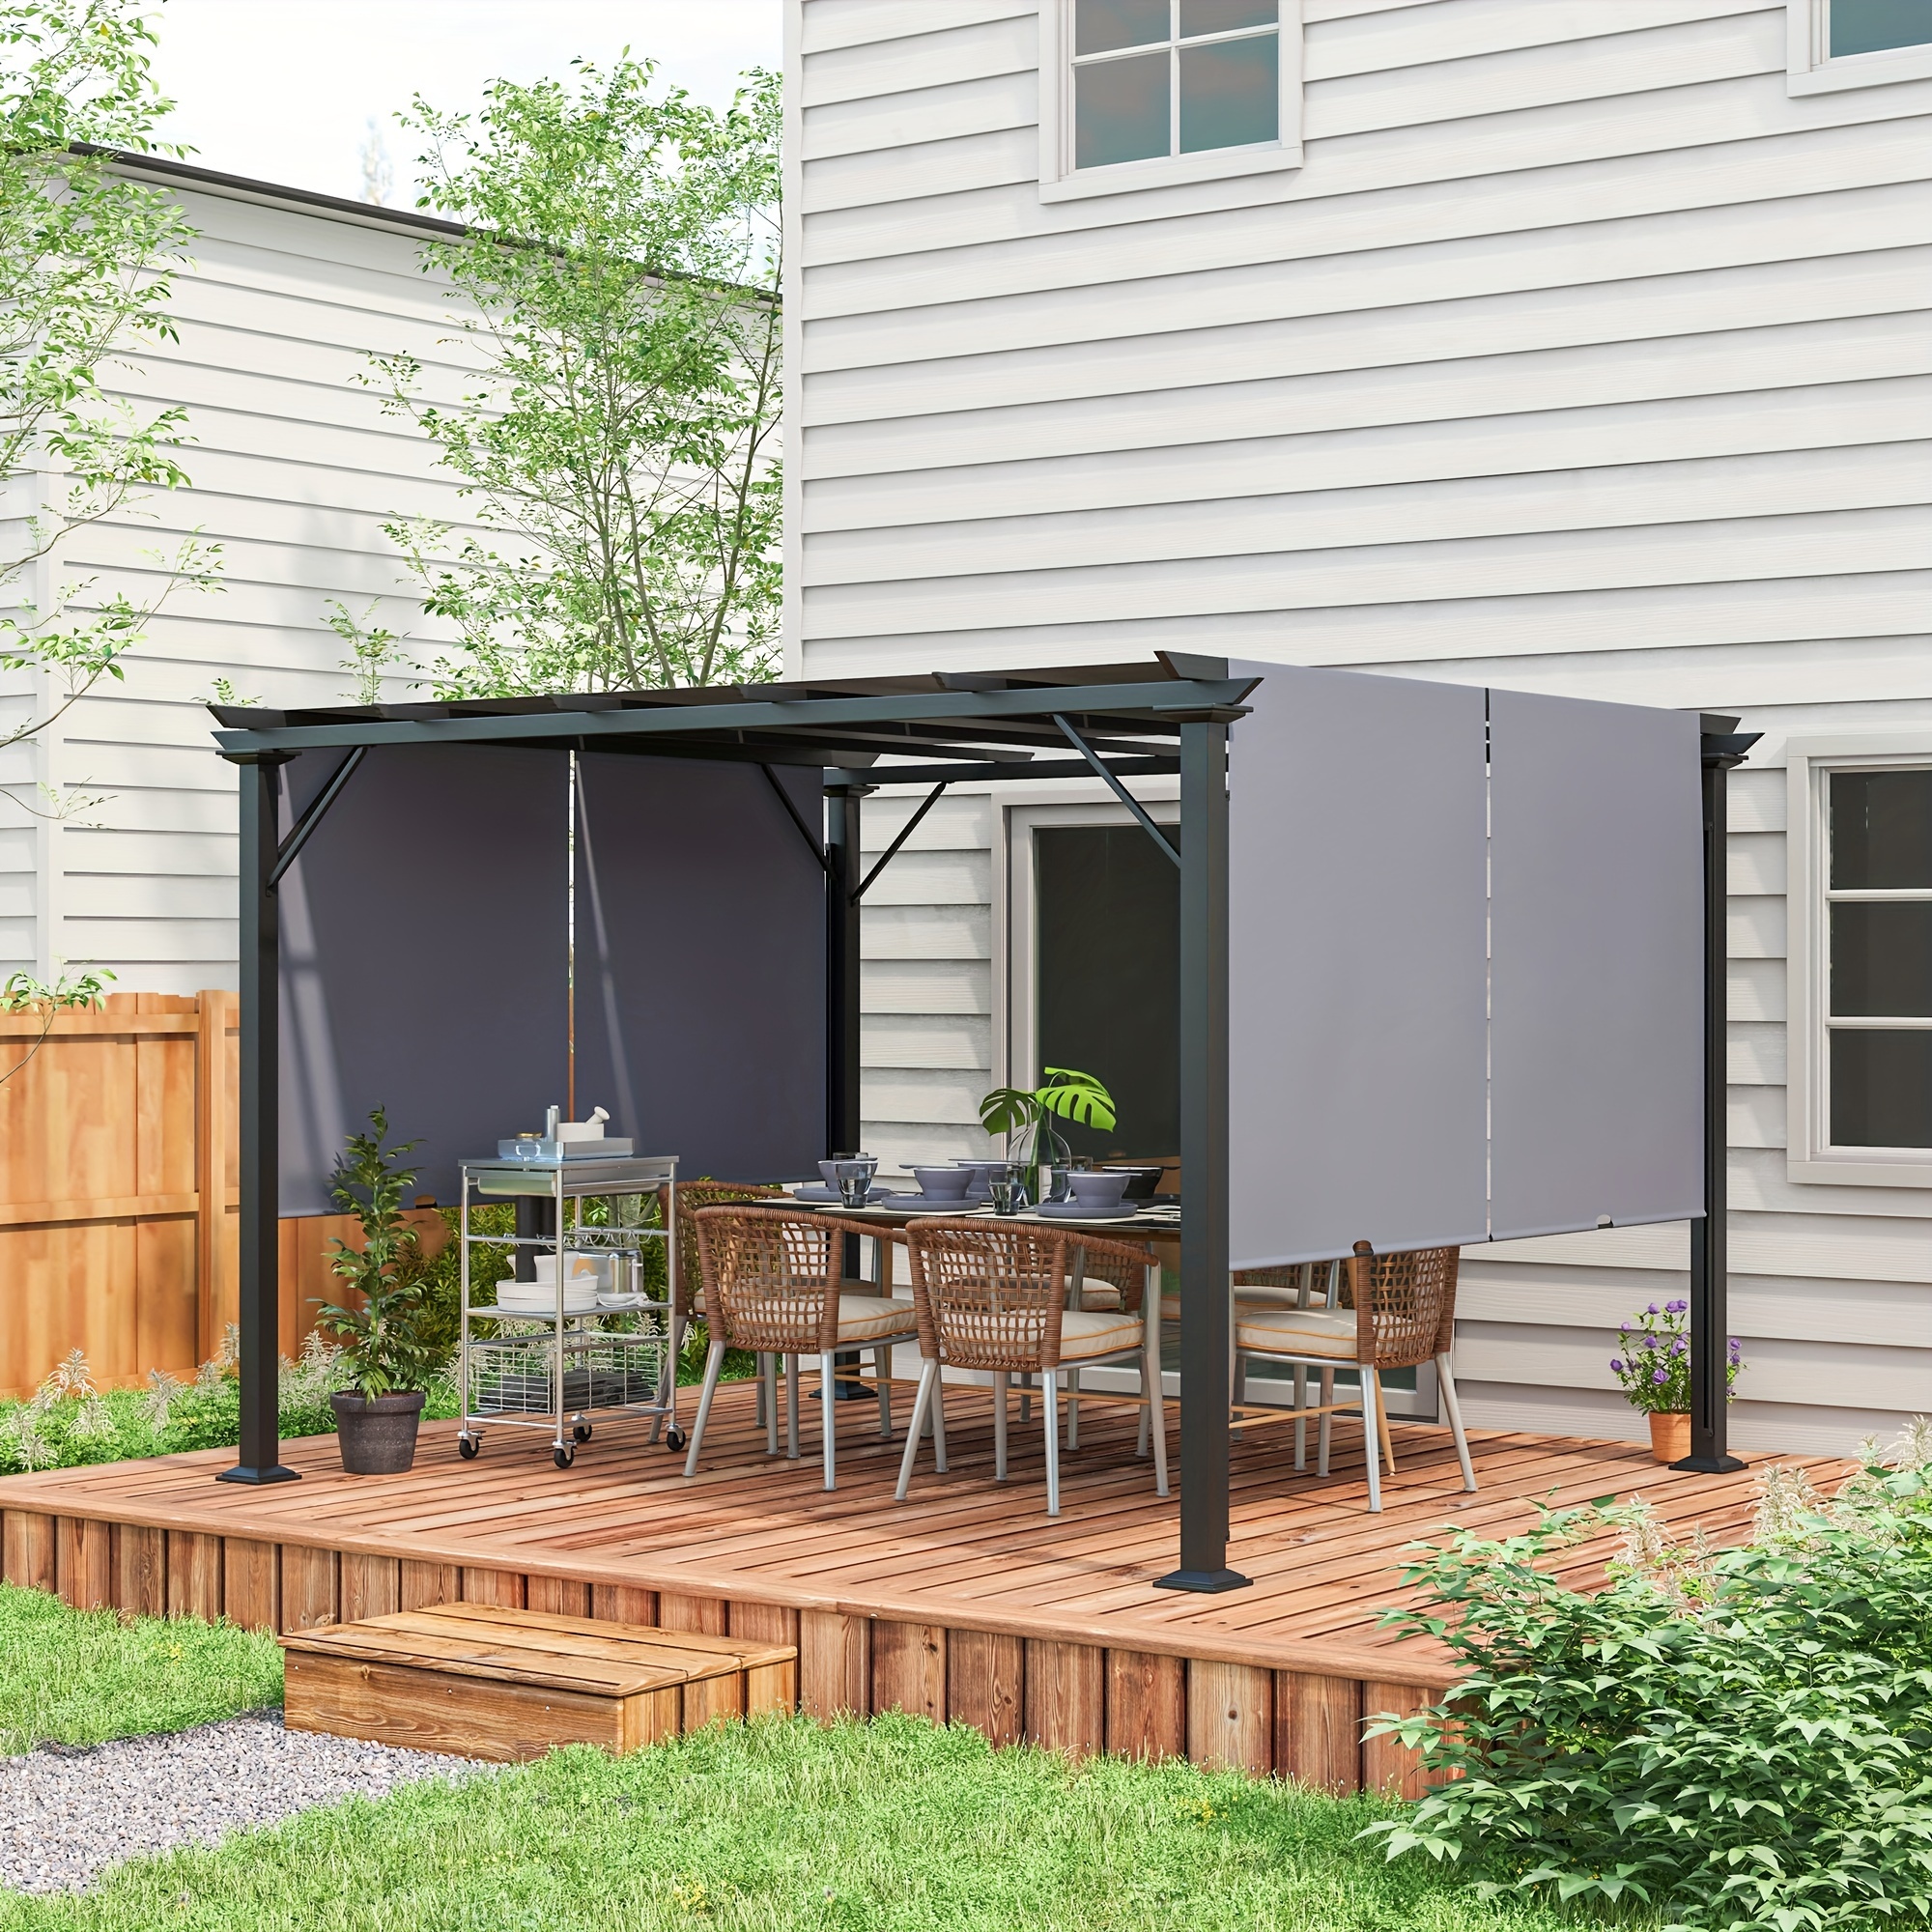 

Outsunny 12' X 10' Outdoor Retractable Pergola Canopy With Sun Shade Unique Design Canopy Patio Metal Shelter For Garden Porch Beach, Gray